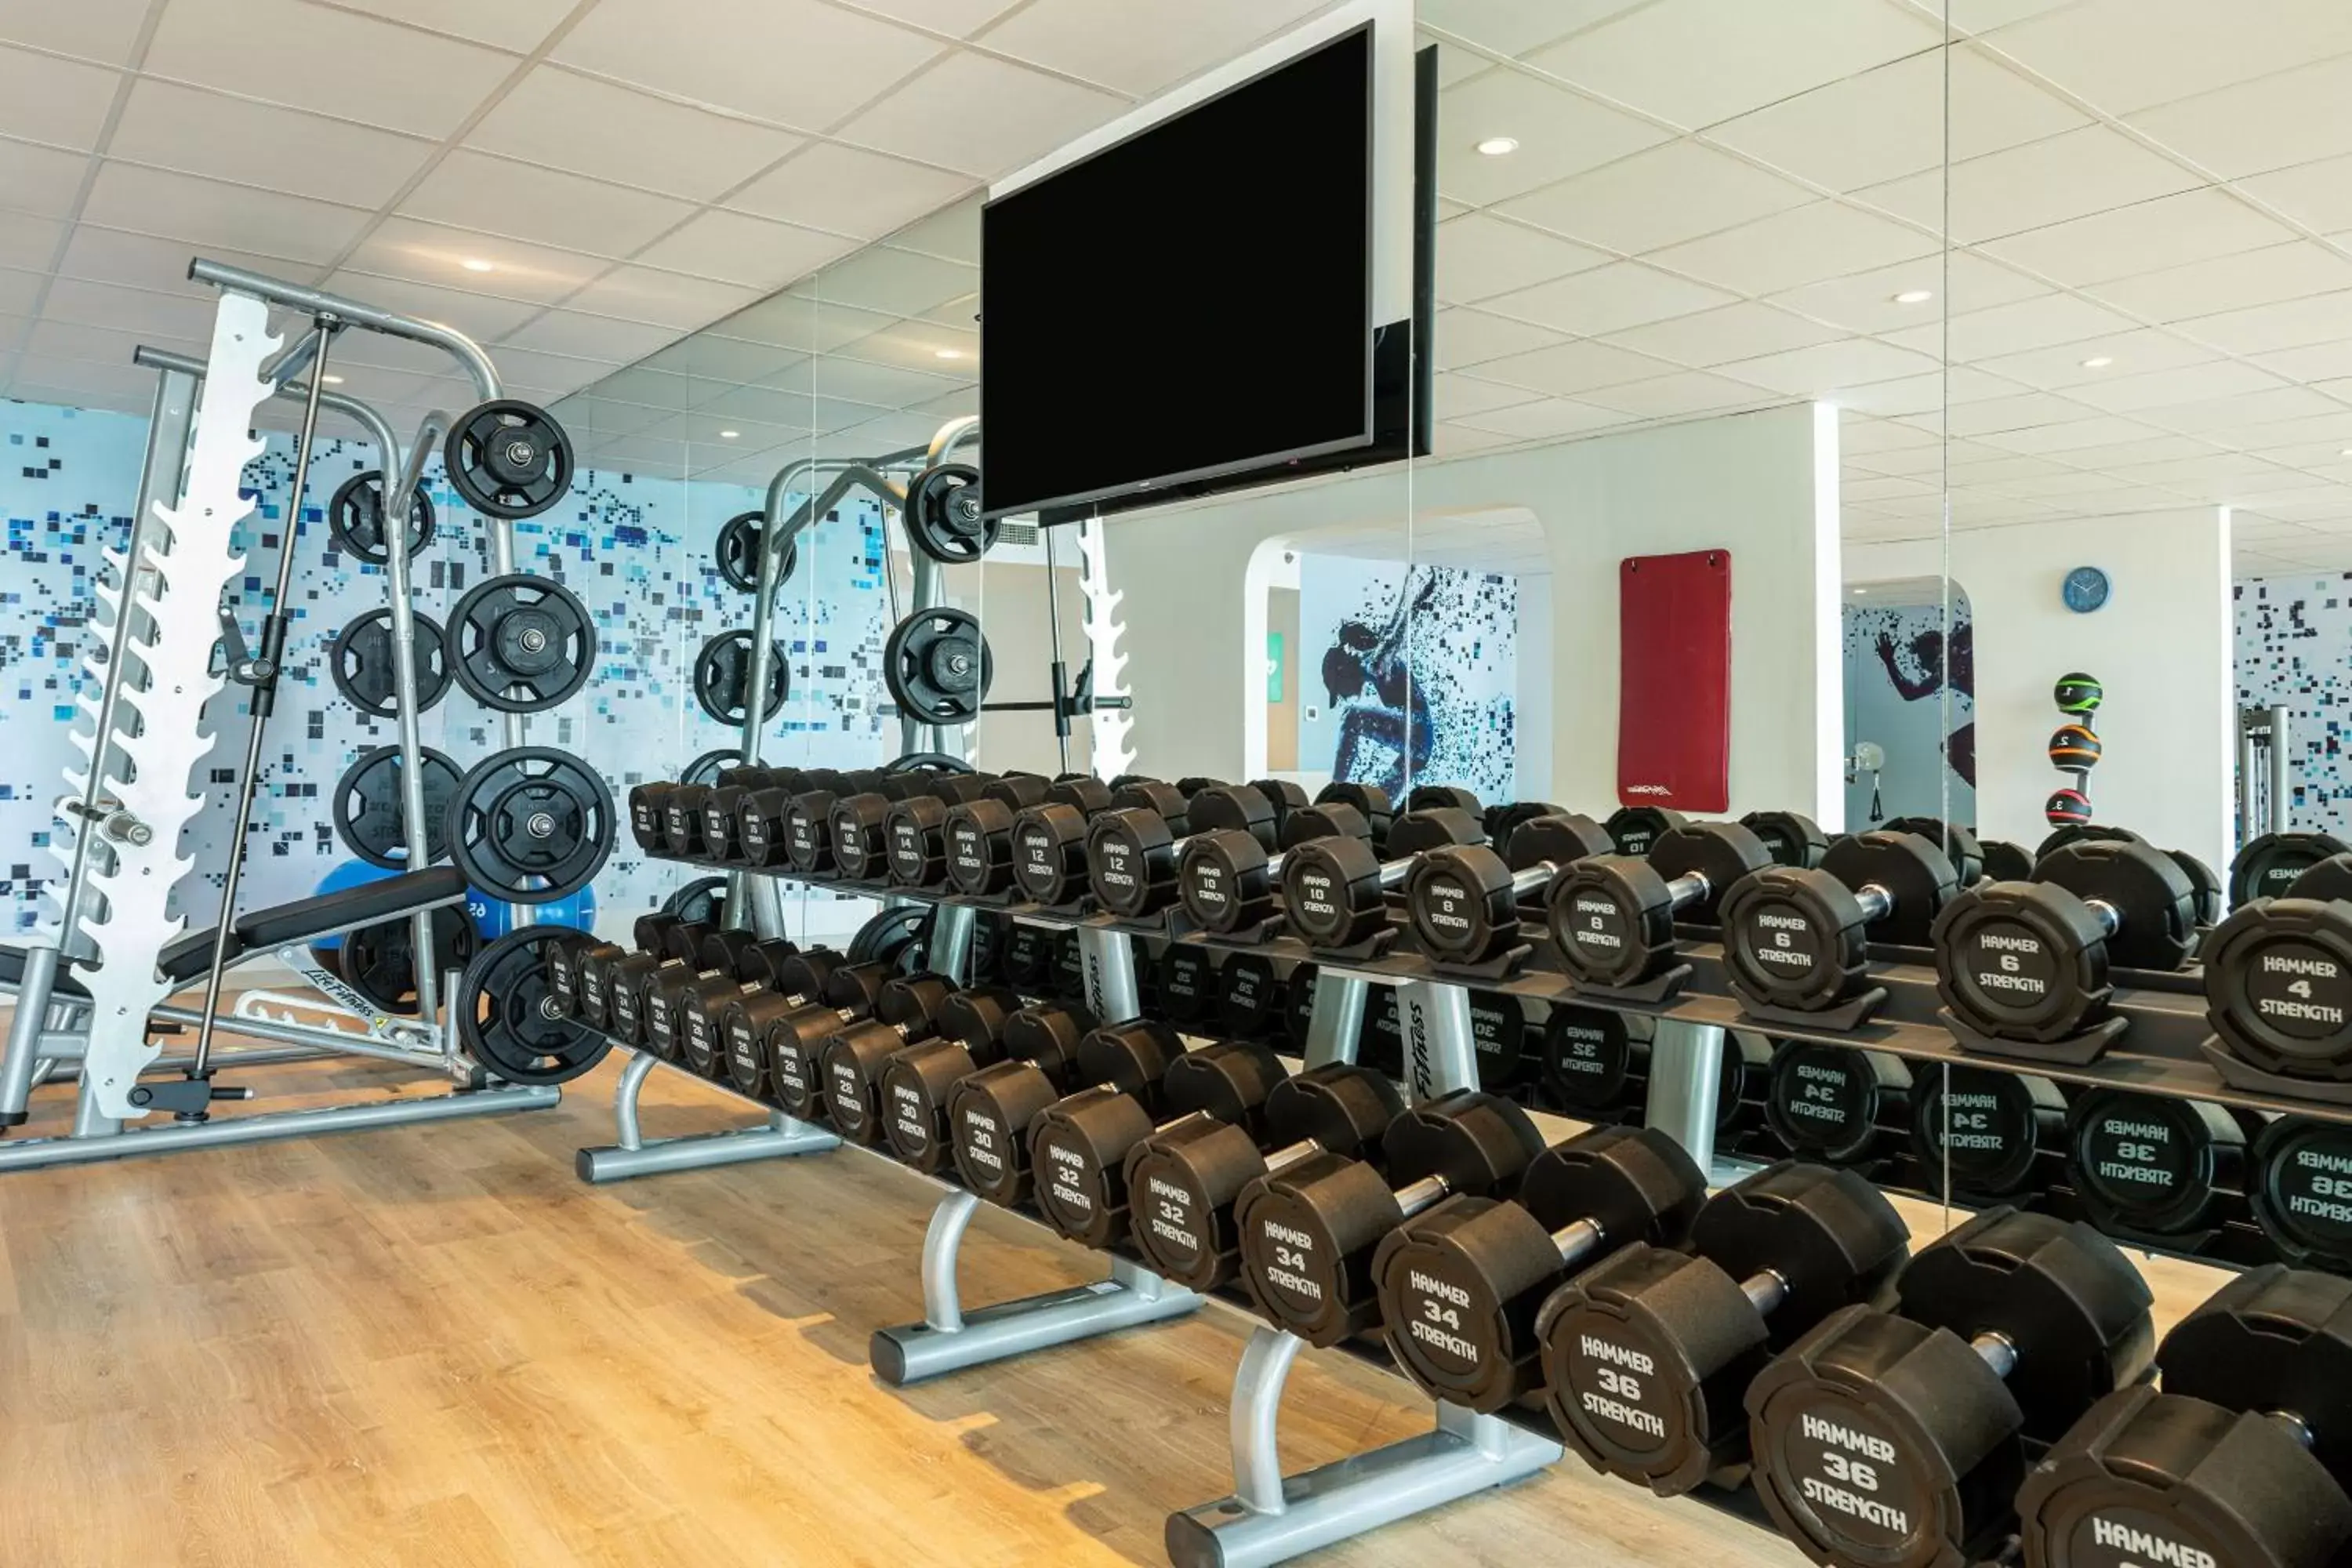 Fitness centre/facilities, Fitness Center/Facilities in Sheraton Djibouti